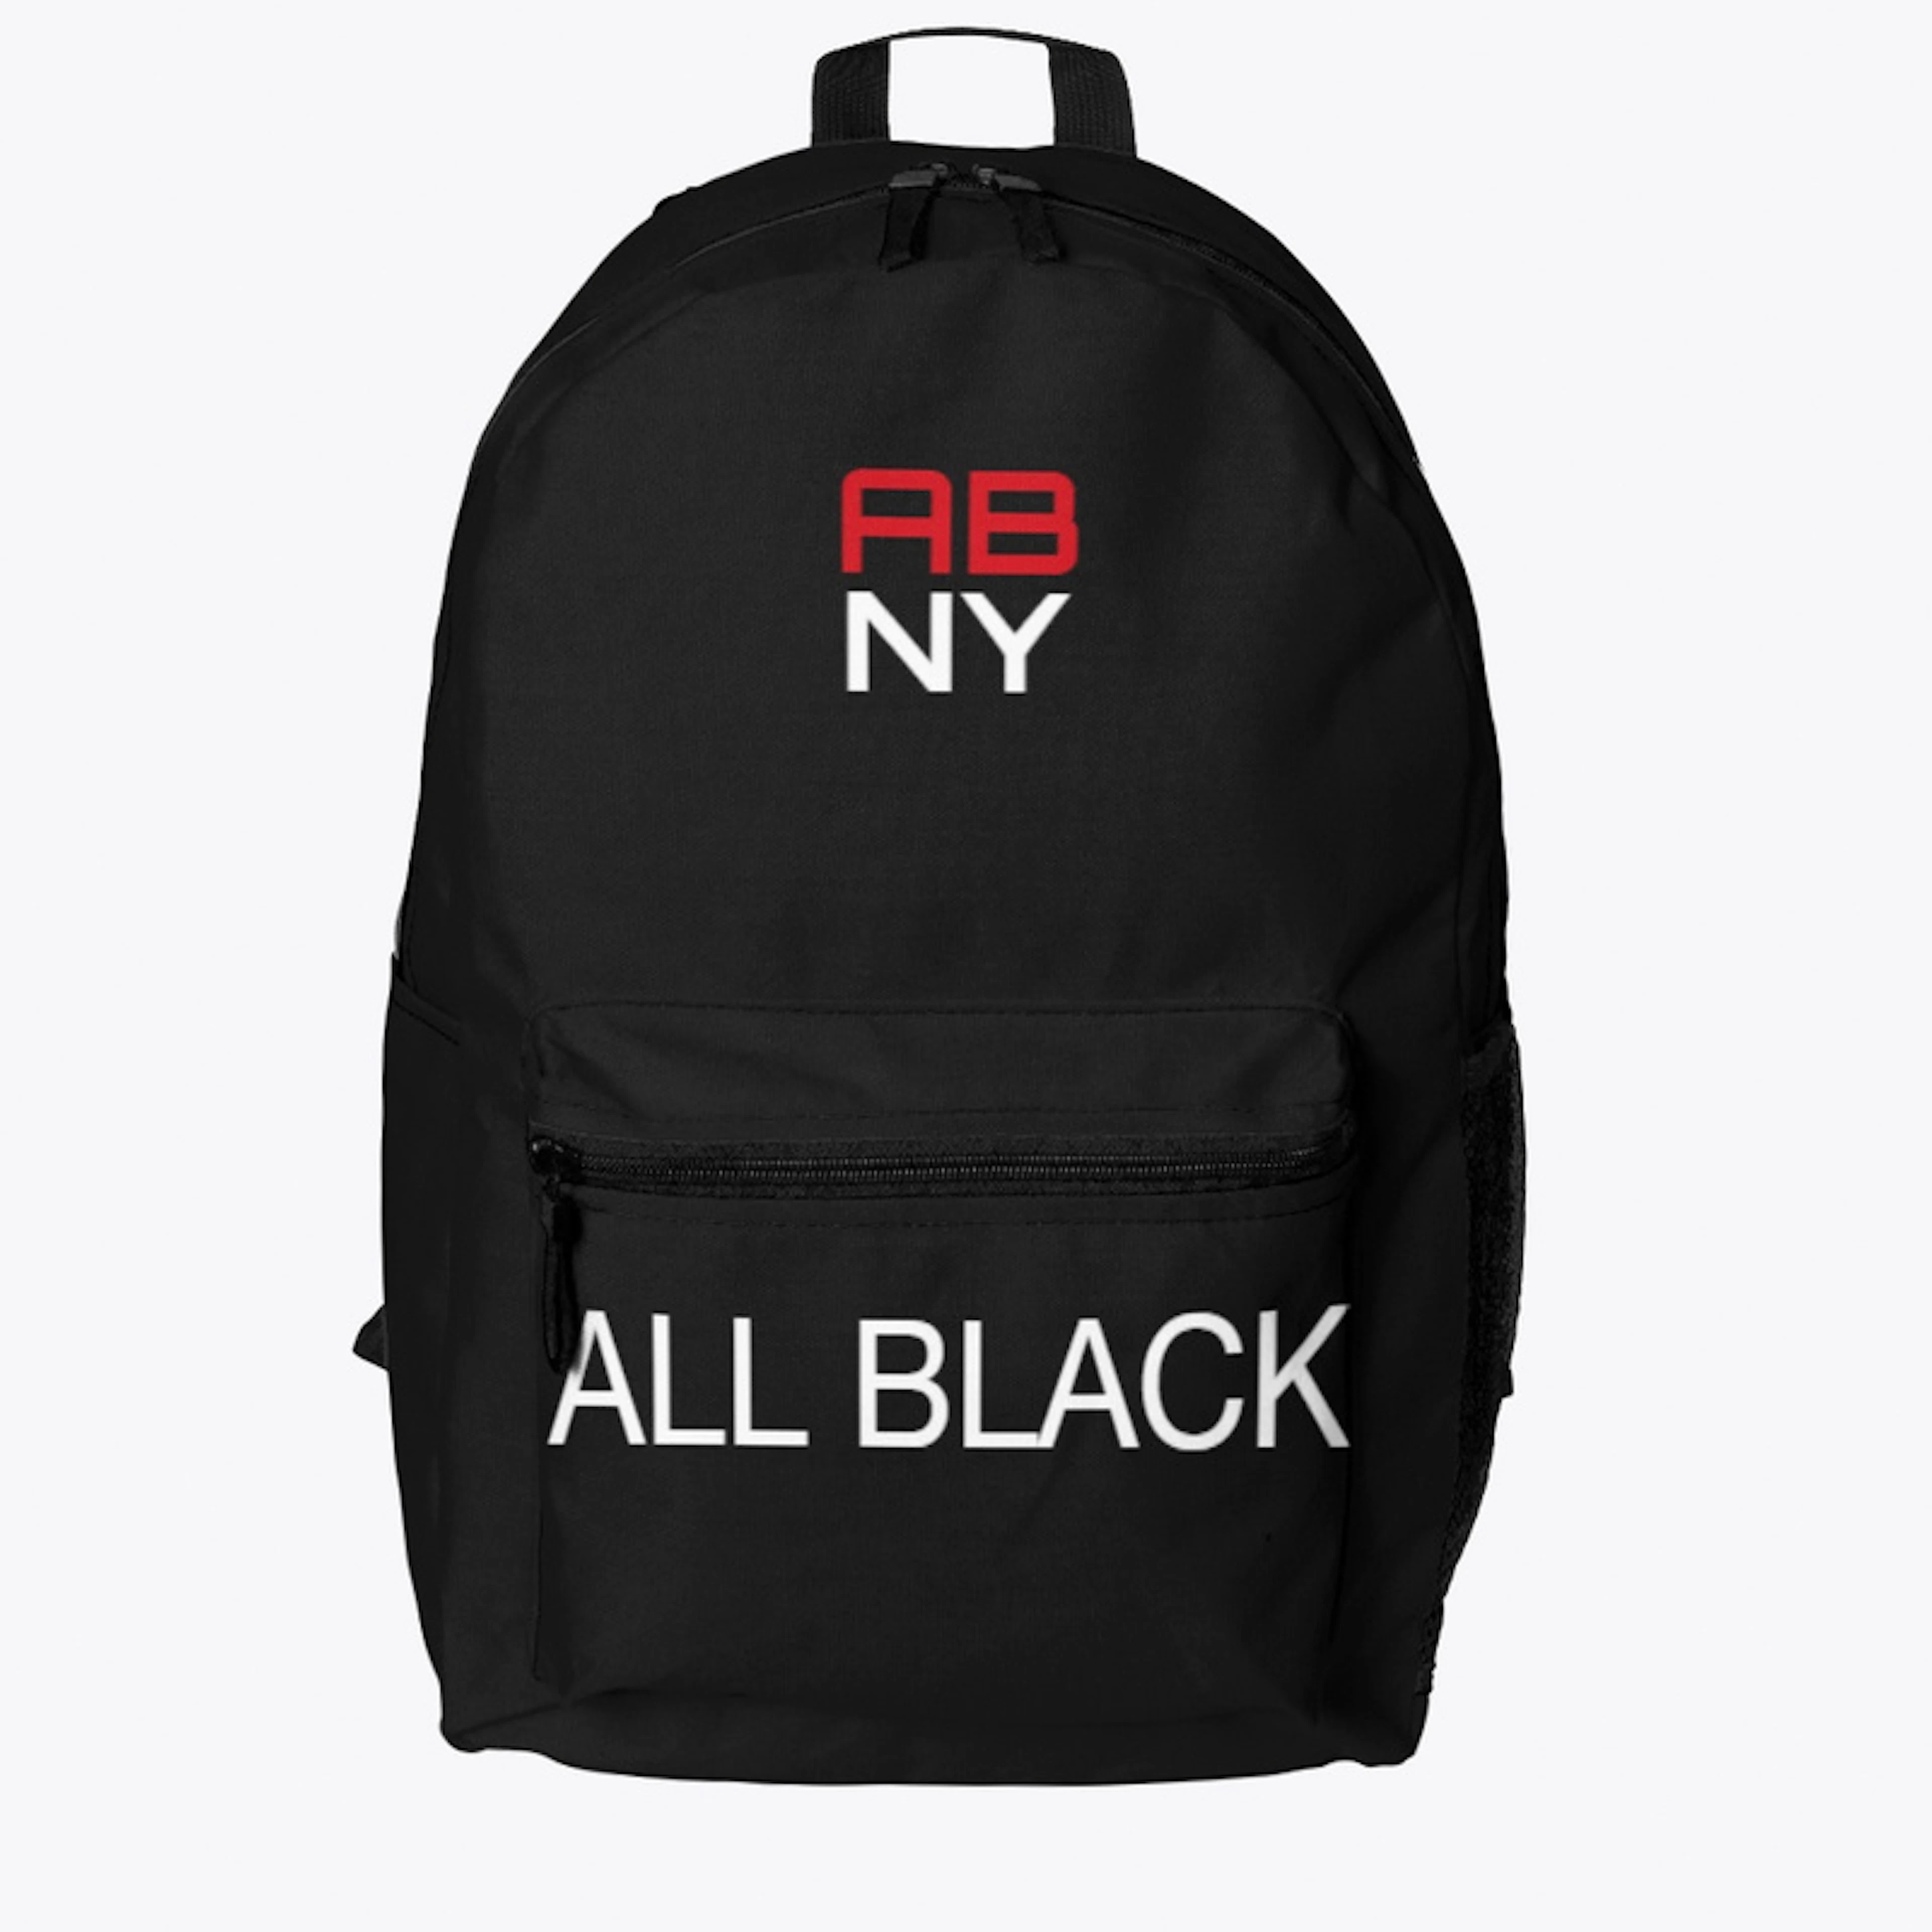  ALL BLACK NY